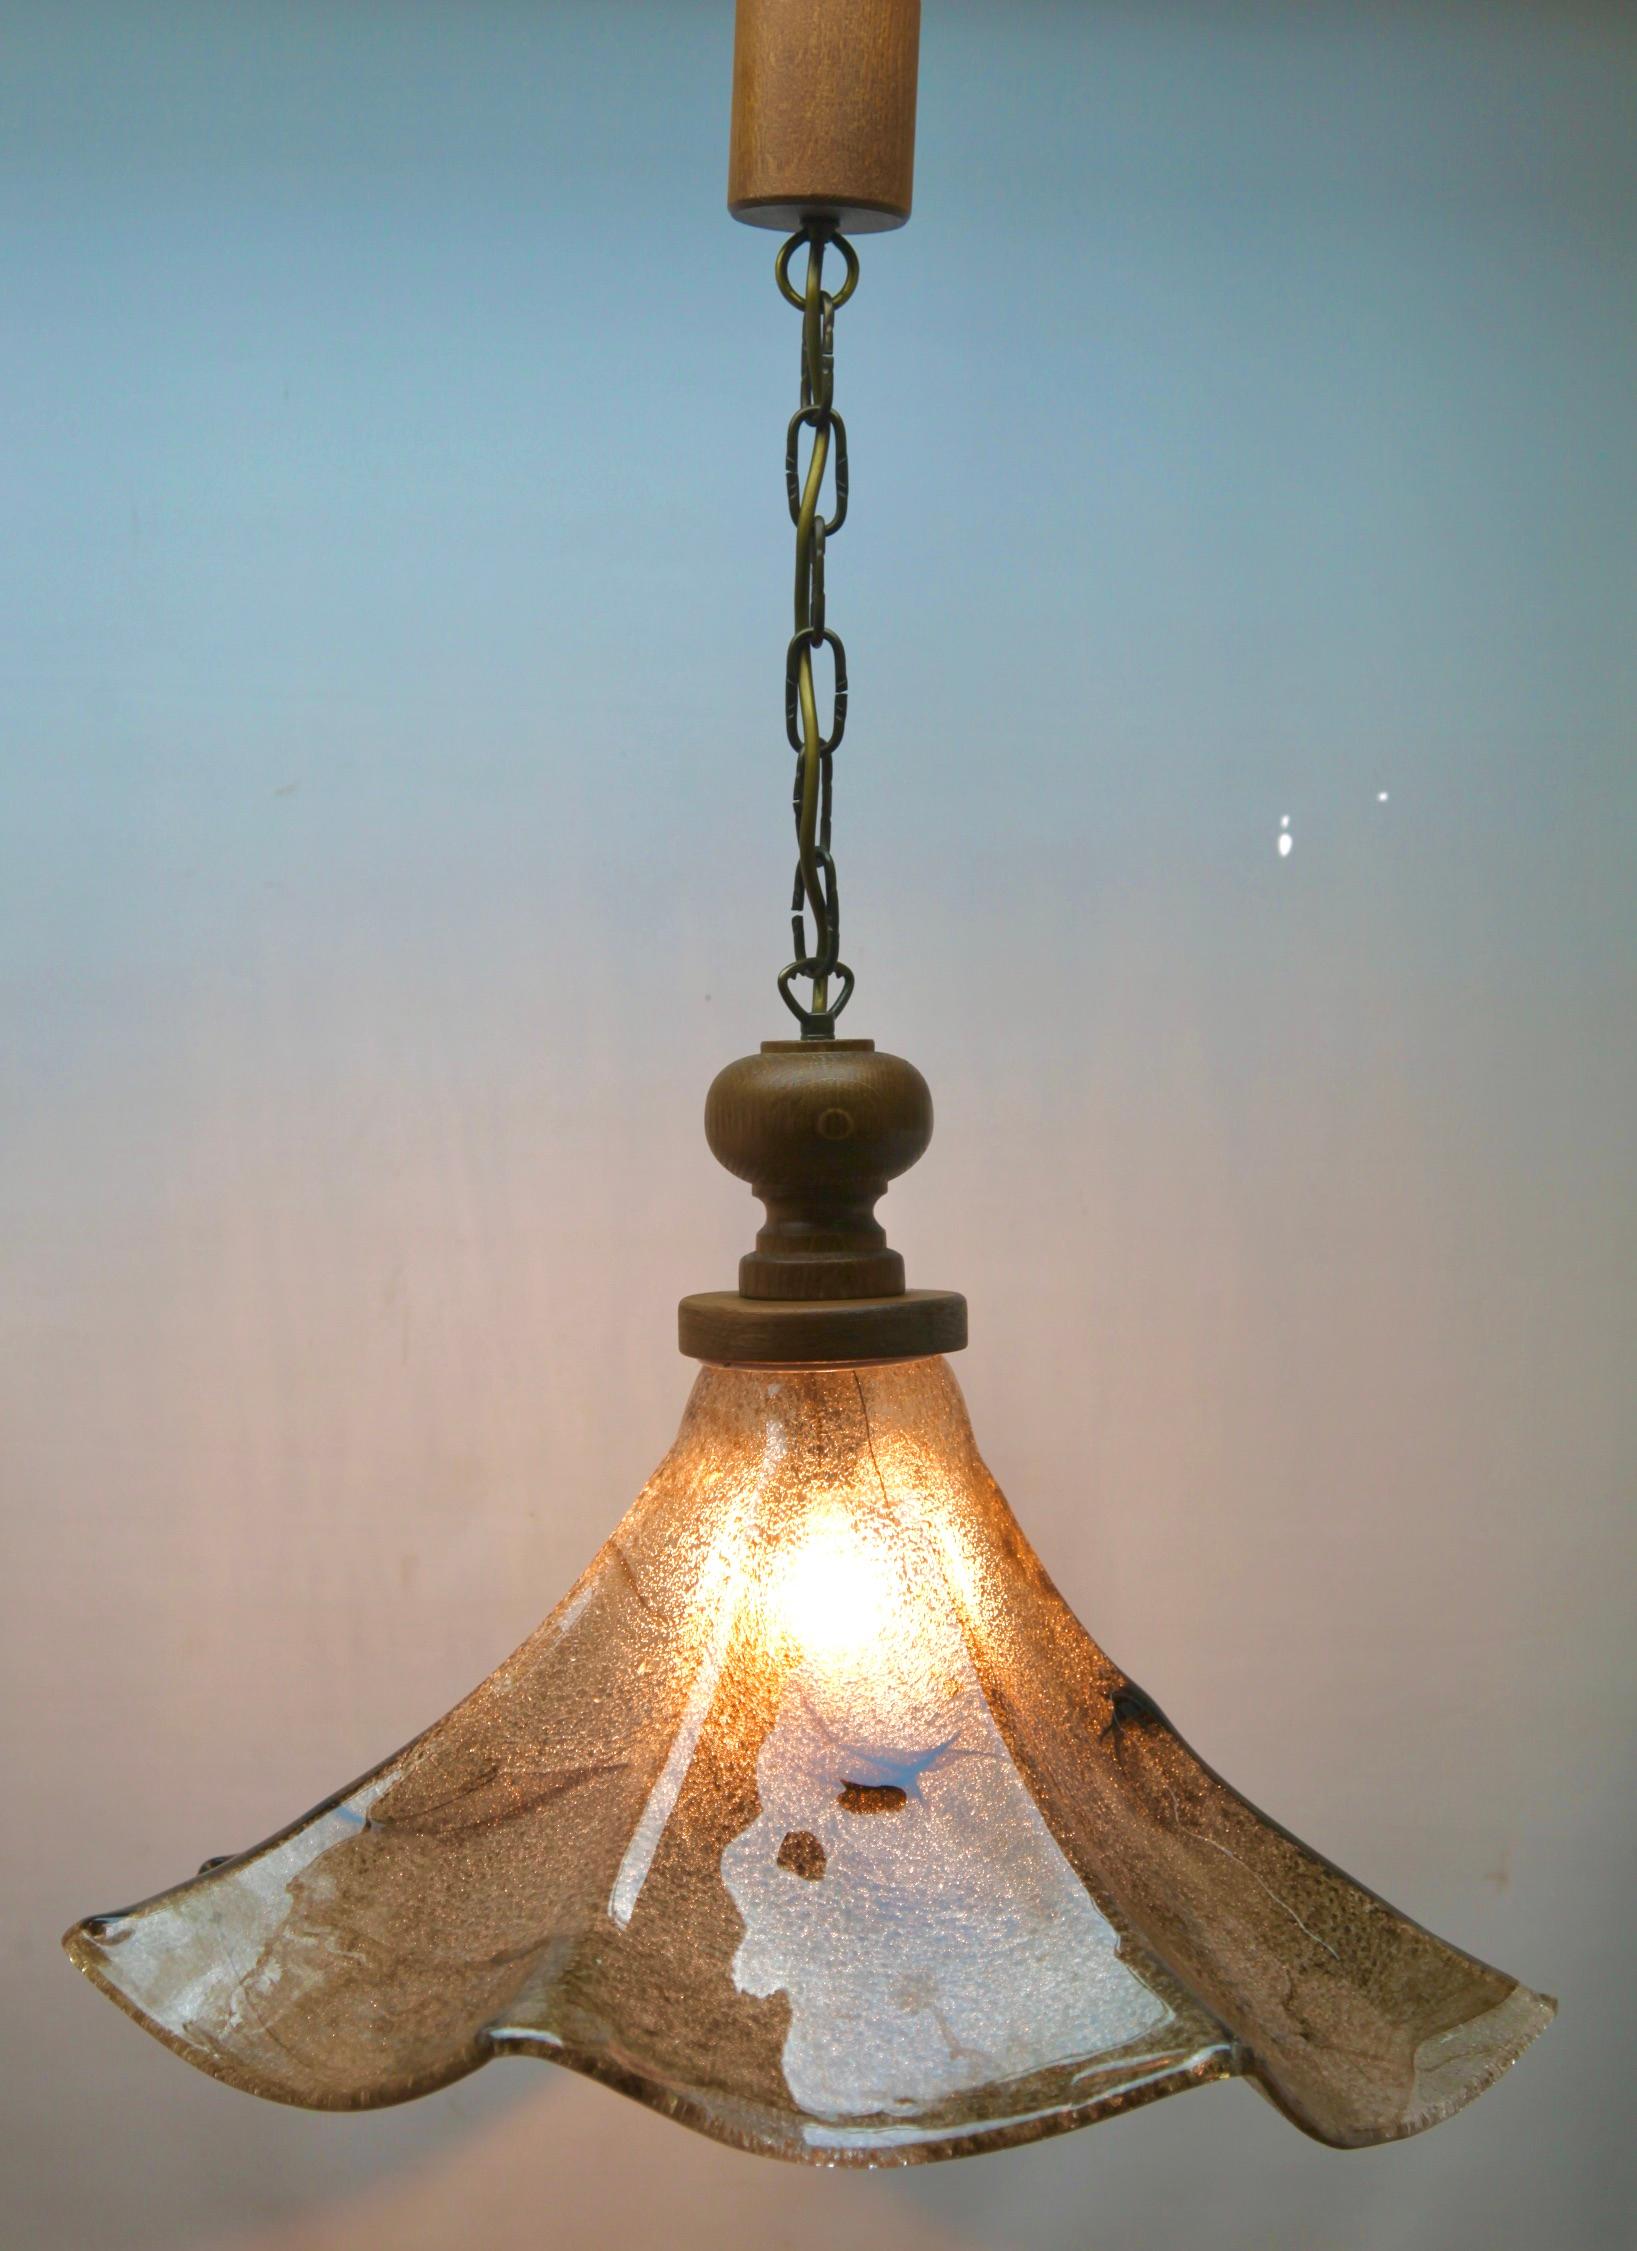 Von Carlo Nason für Mazzega
Dieser sorgfältig gefertigte Lampenschirm aus Glas mit grünen Streifen auf einem Glasboden und einem zarten grünen Rand entlang des gekräuselten Randes sorgt für den Farbkontrast. Der Körper nimmt die Farbe der Glühbirne